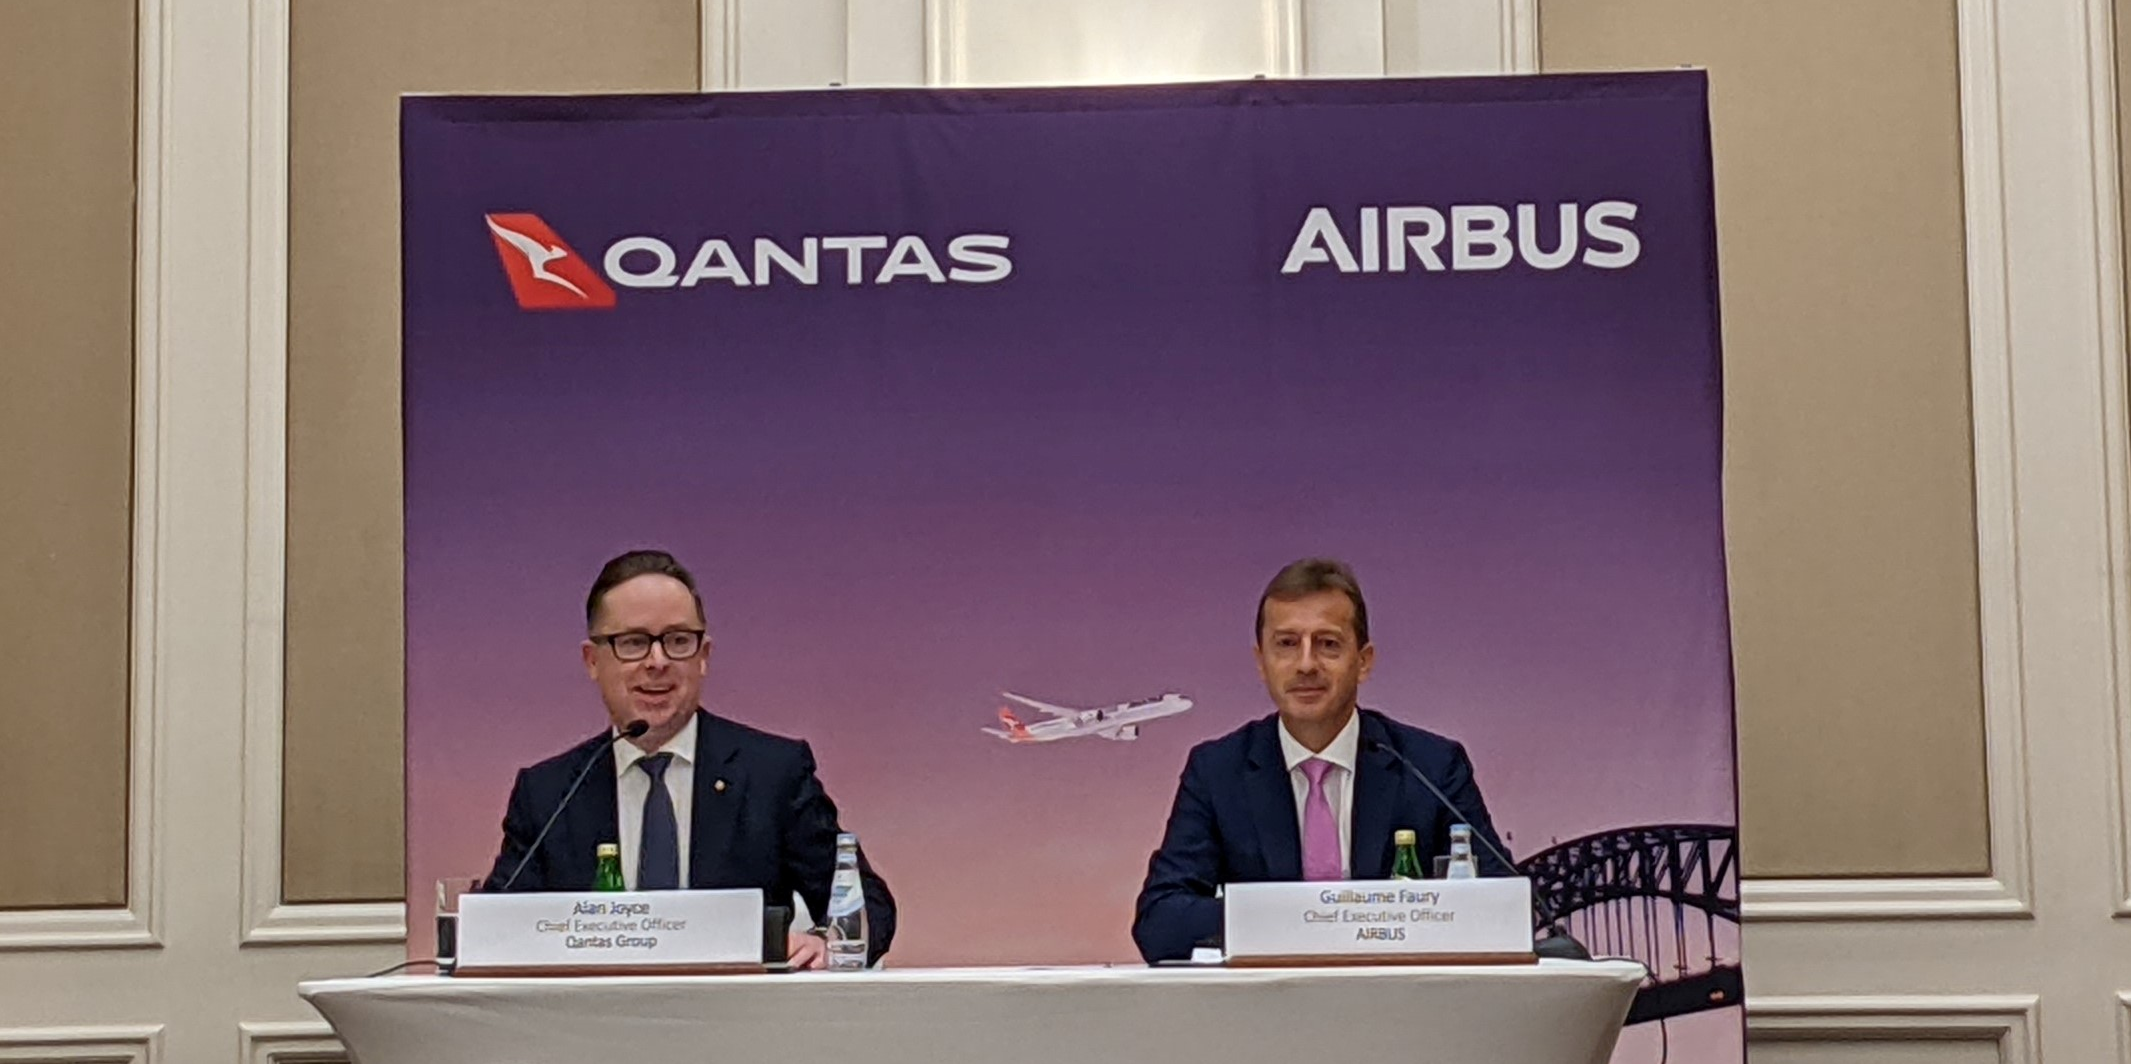 Airbus et Qantas main dans la main pour produire du biocarburant en Australie